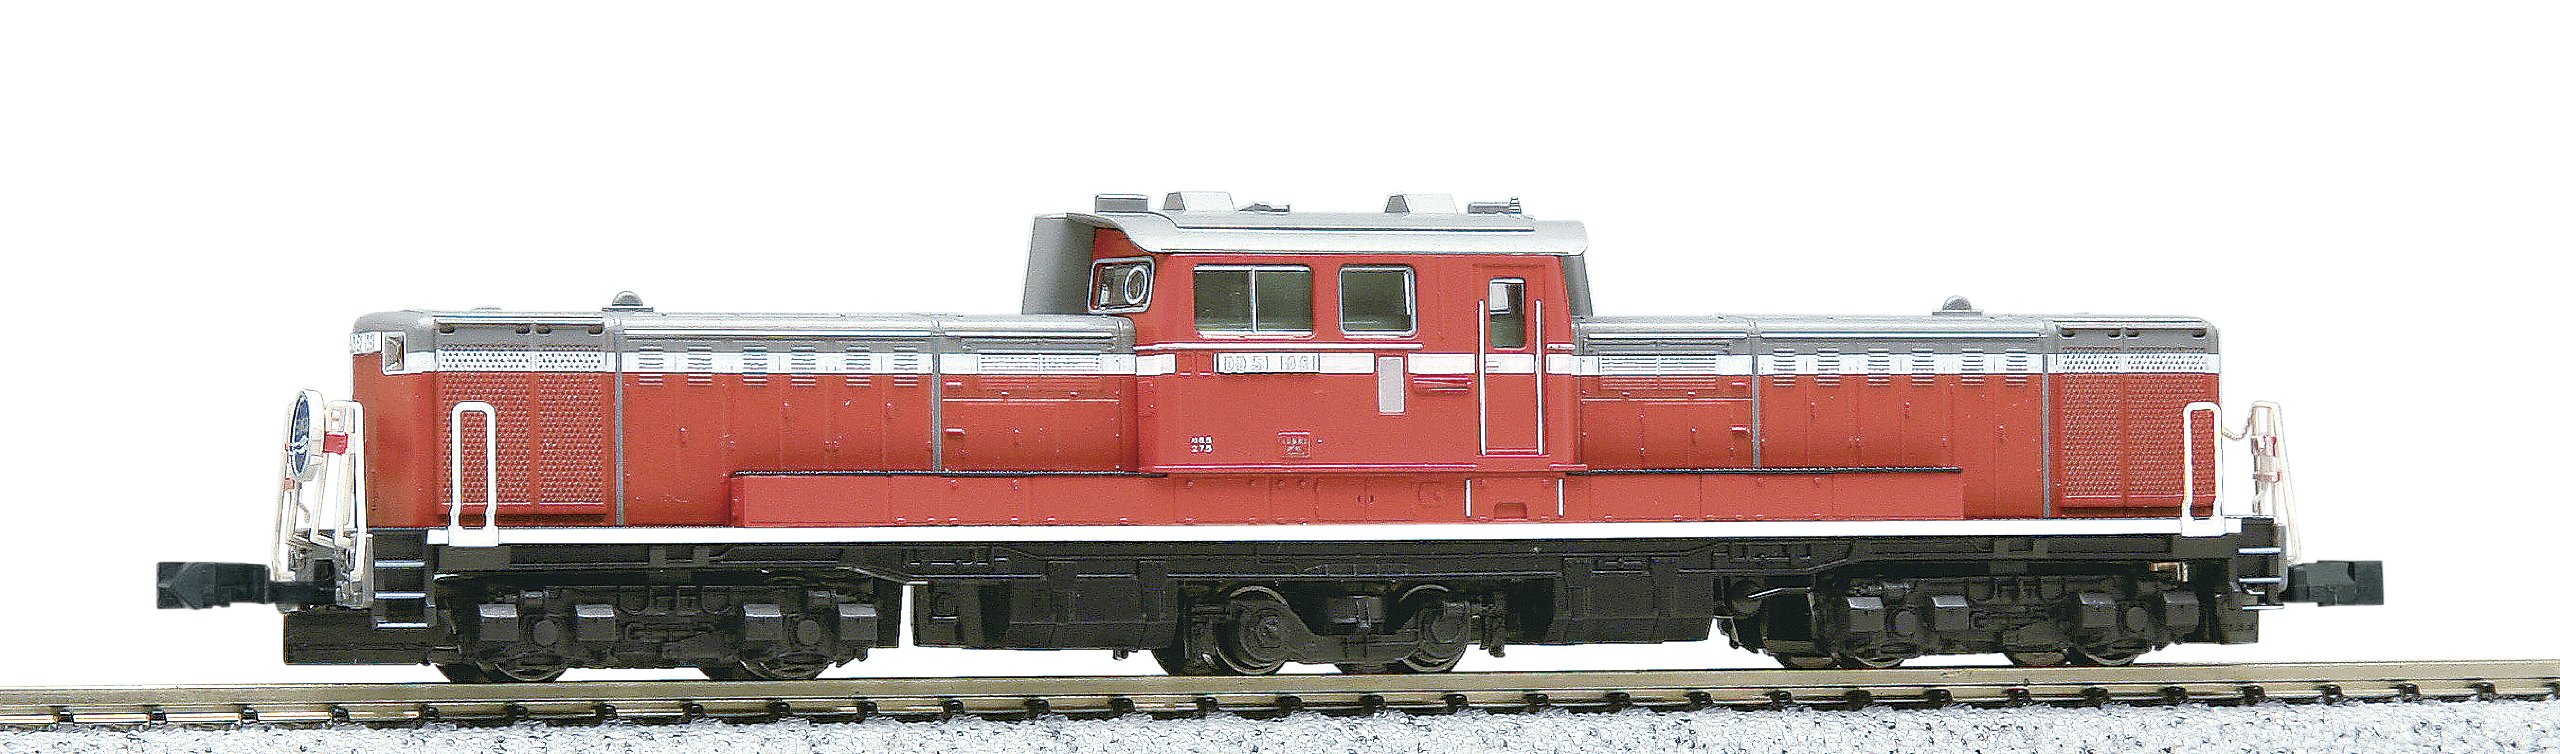 Kato N Gauge Model DD51 Late Cold Resistant Diesel Railway Locomotive 7008-1